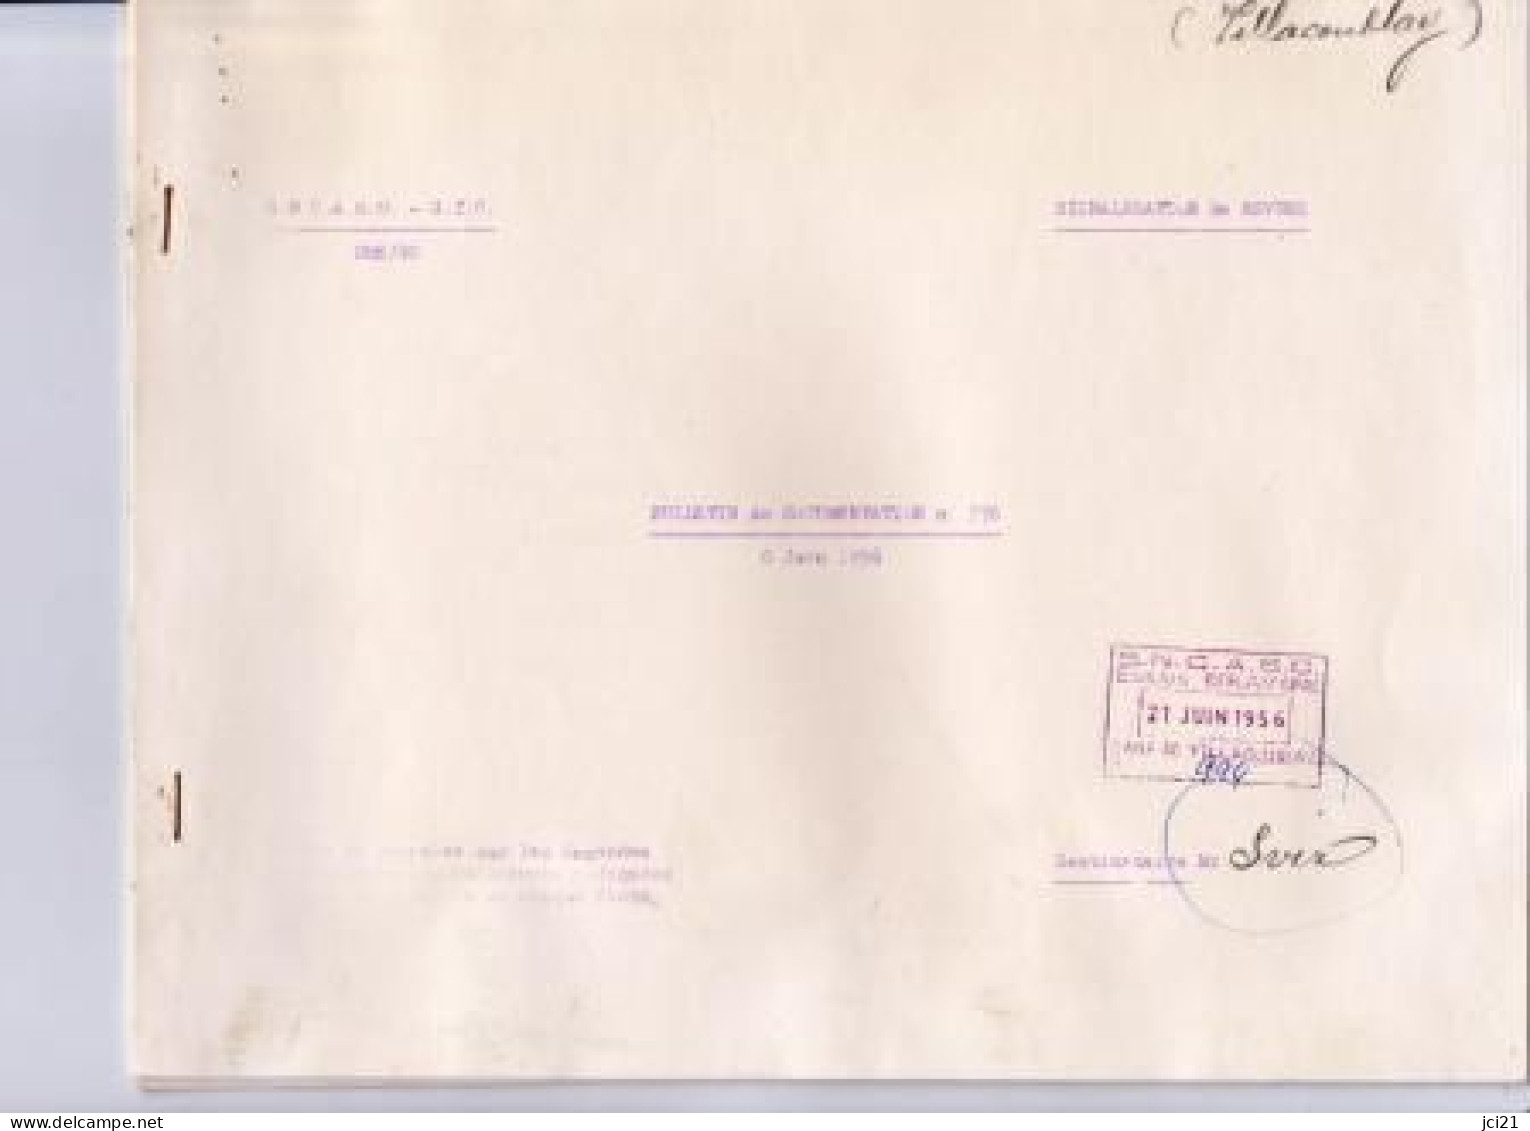 Bulletin De Documentation De La S.N.C.A.S.O. - G.T.C. N° 376 Du 8 Juin 1956 _M247 - Aviation